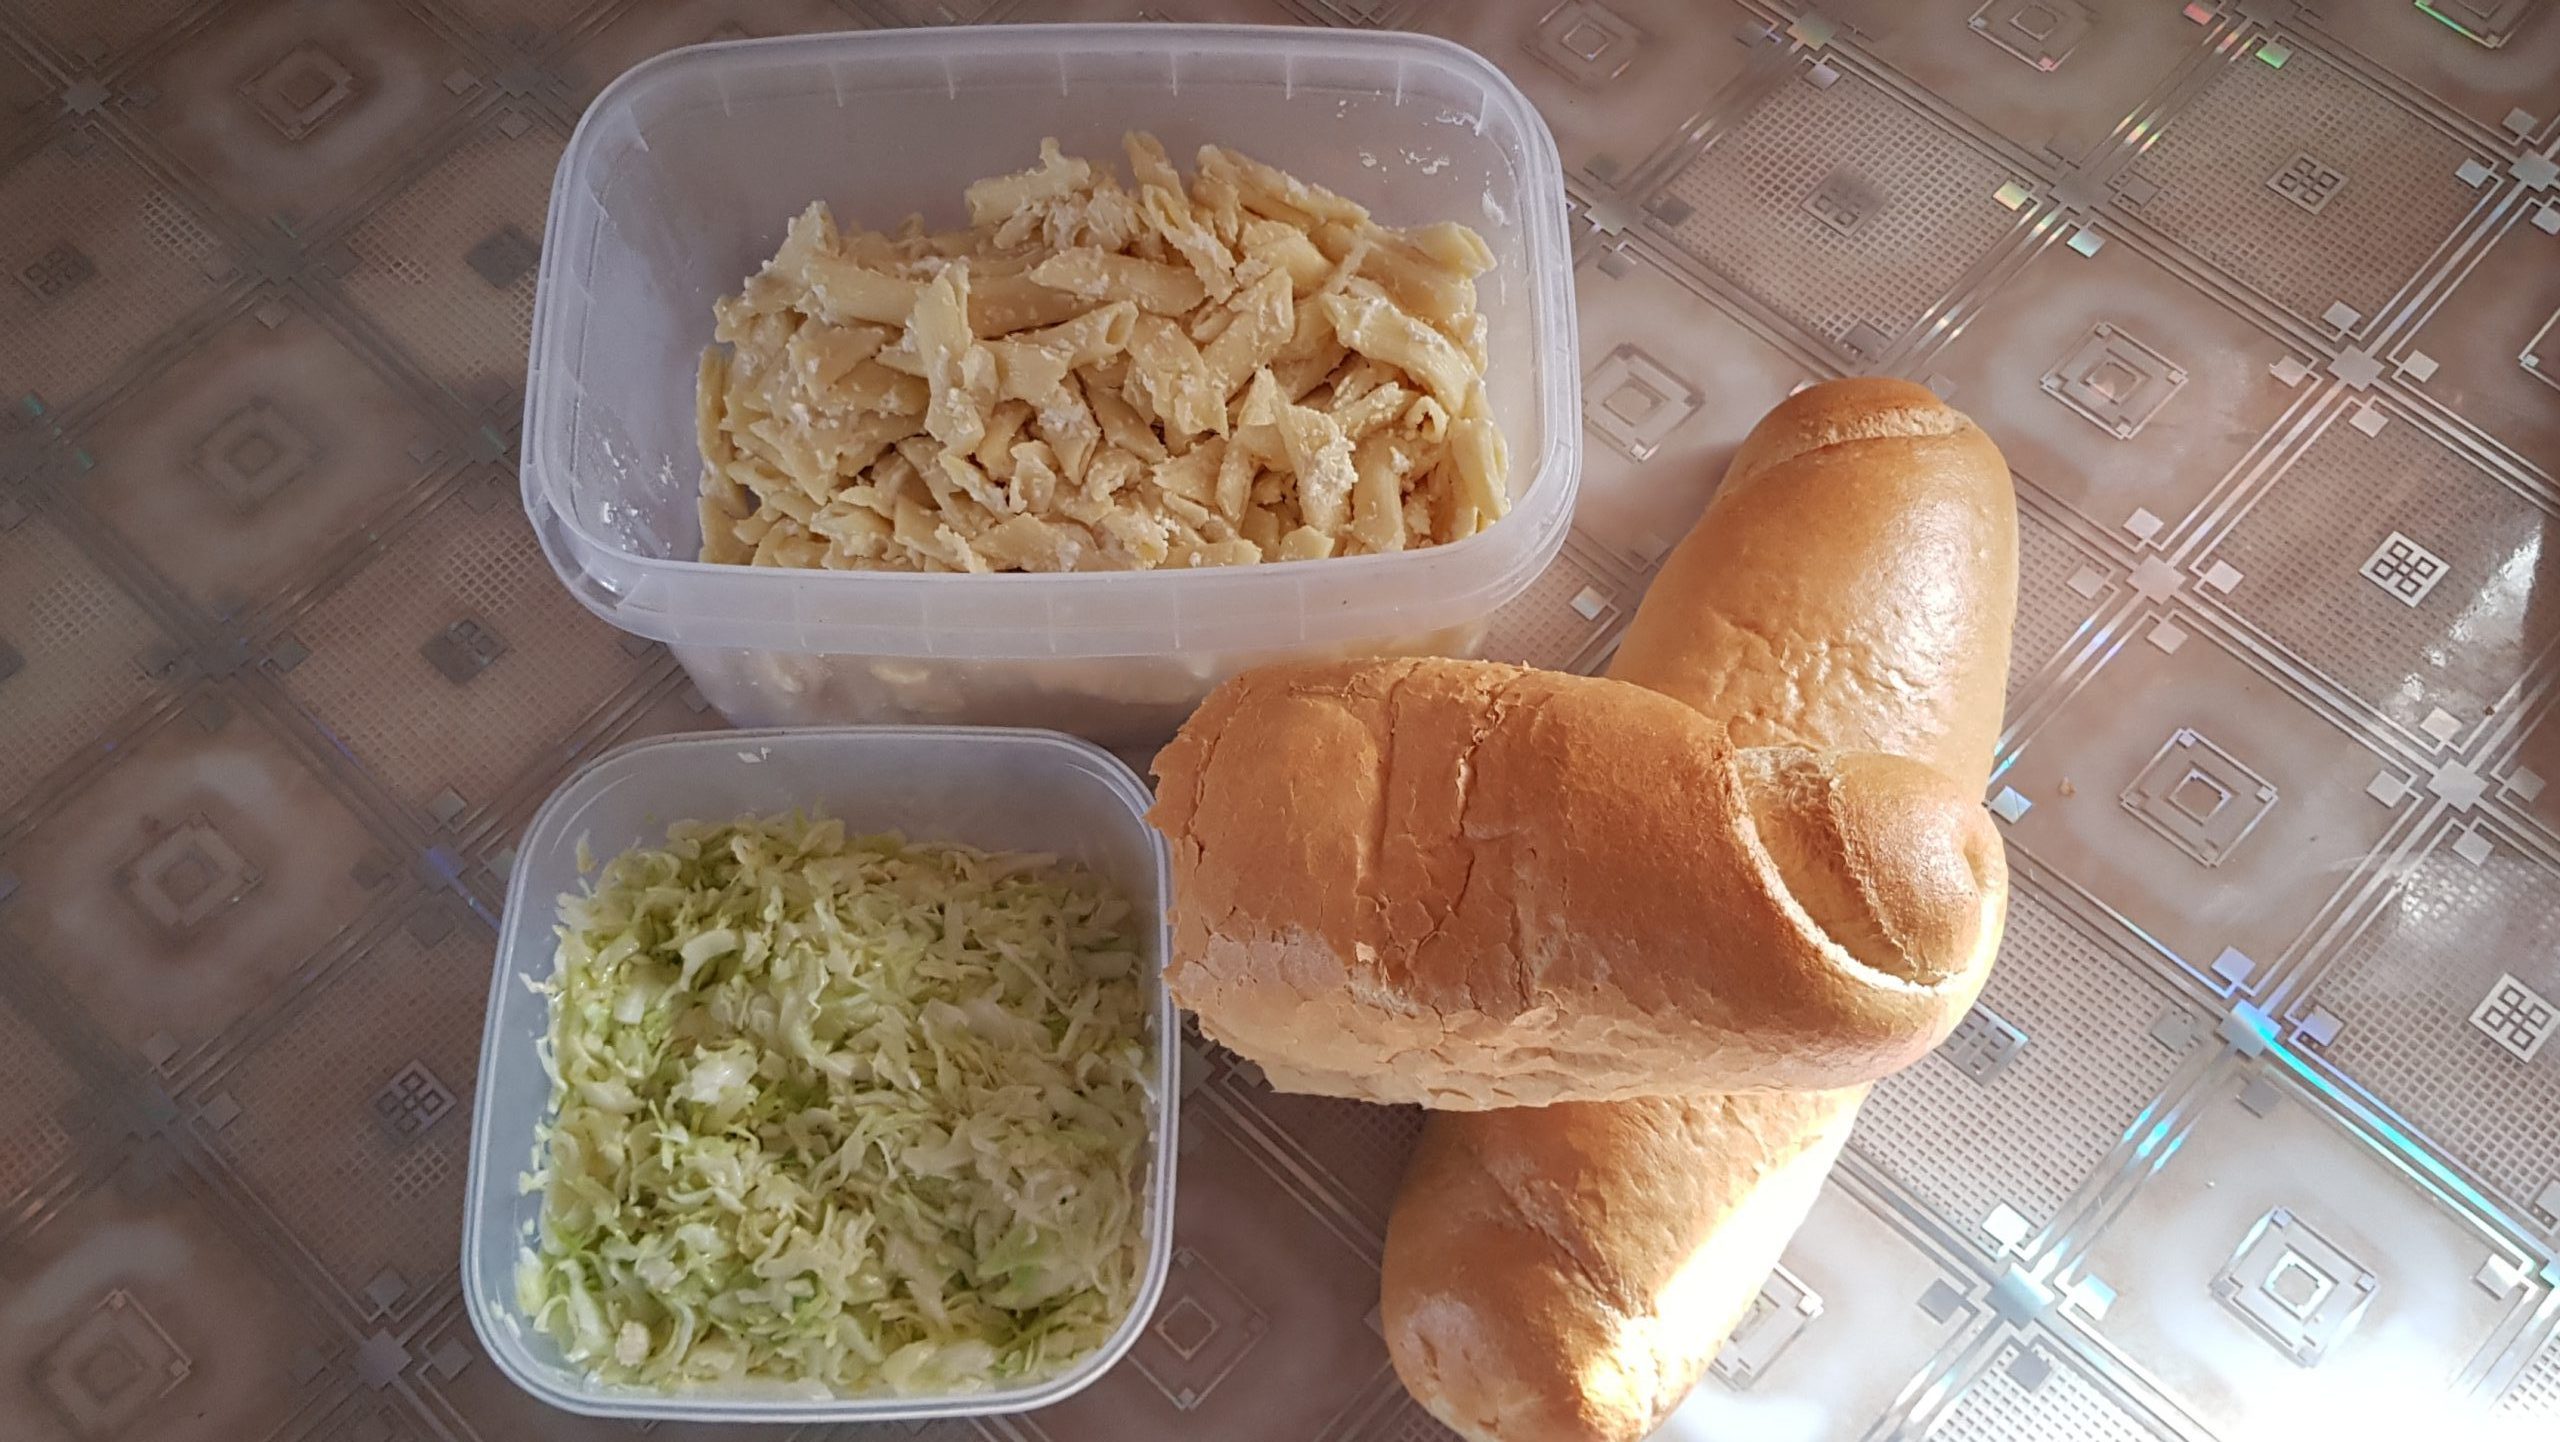 Besplatni dnevni obrok - Makarone sa sirom i kupus salata (Foto: Enis Eminović)